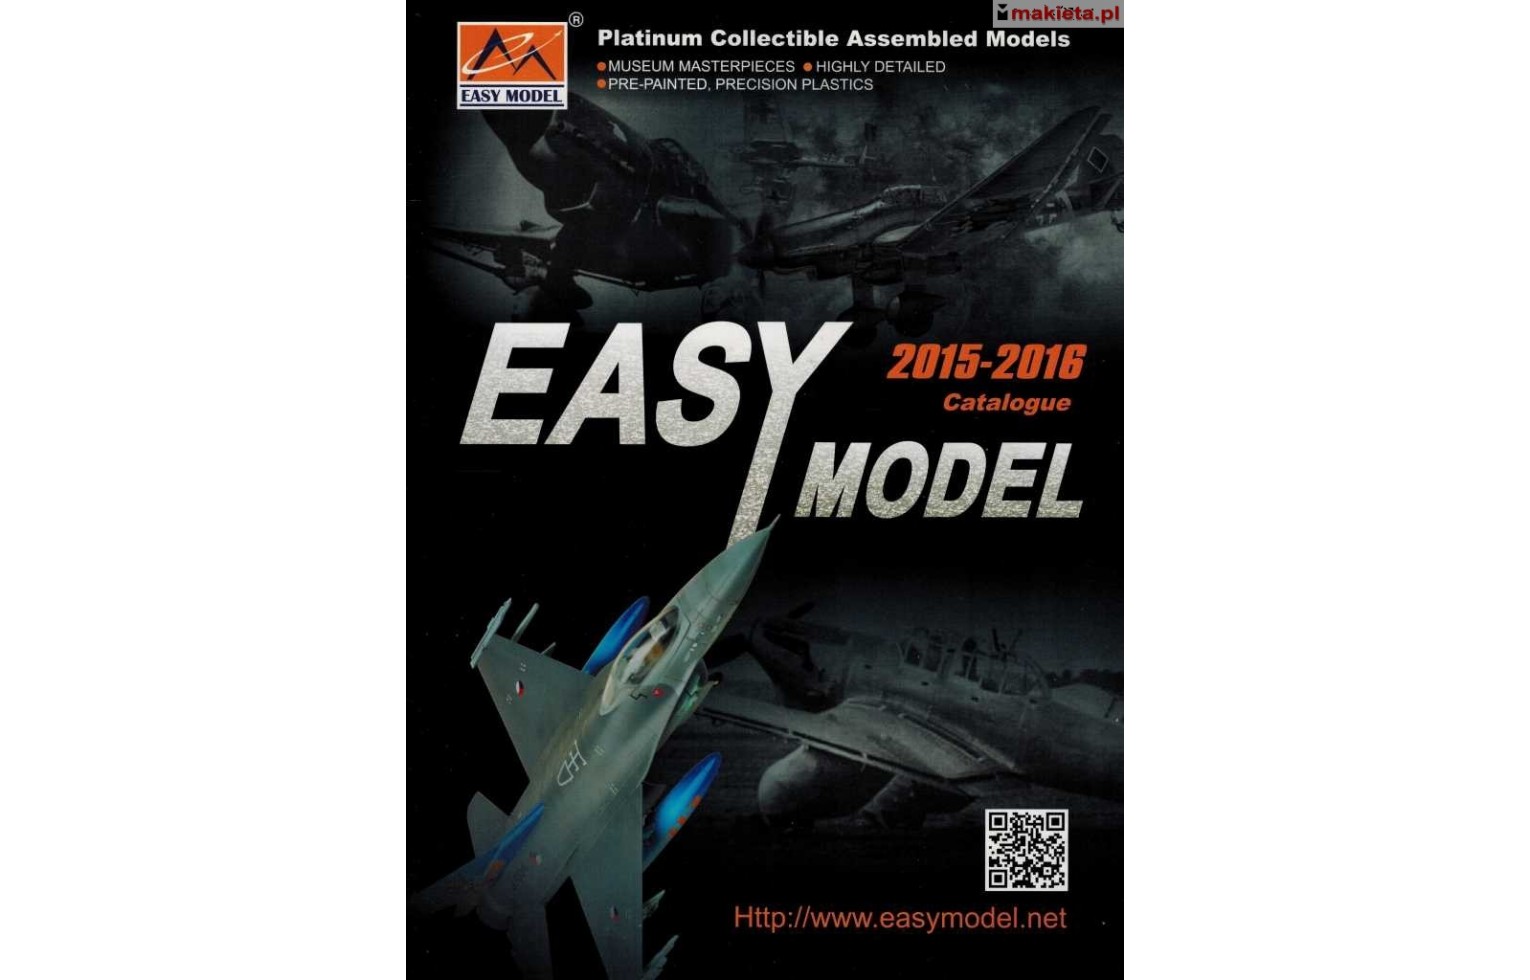 EM16, Katalog EASY MODEL 2015-2016